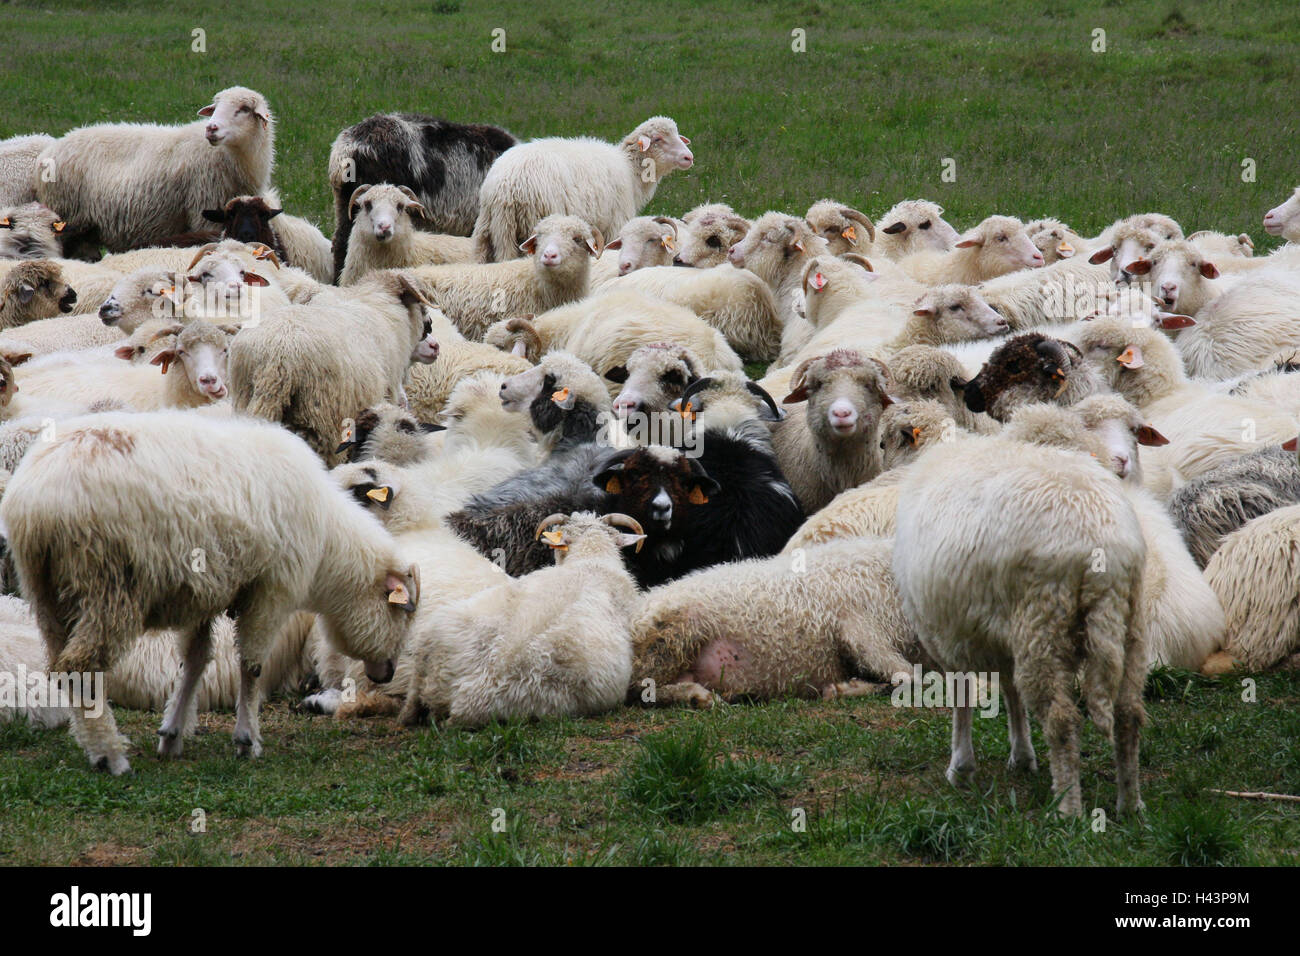 Polonia, Alti Tatra, gregge di pecore, destinazione, natura, cape tipi, animali, a vantaggio degli animali mammiferi, si concentra, pecore, agricoltura, allevamento, allevamento di bovini, molti marchi auricolari, marcatura, Foto Stock